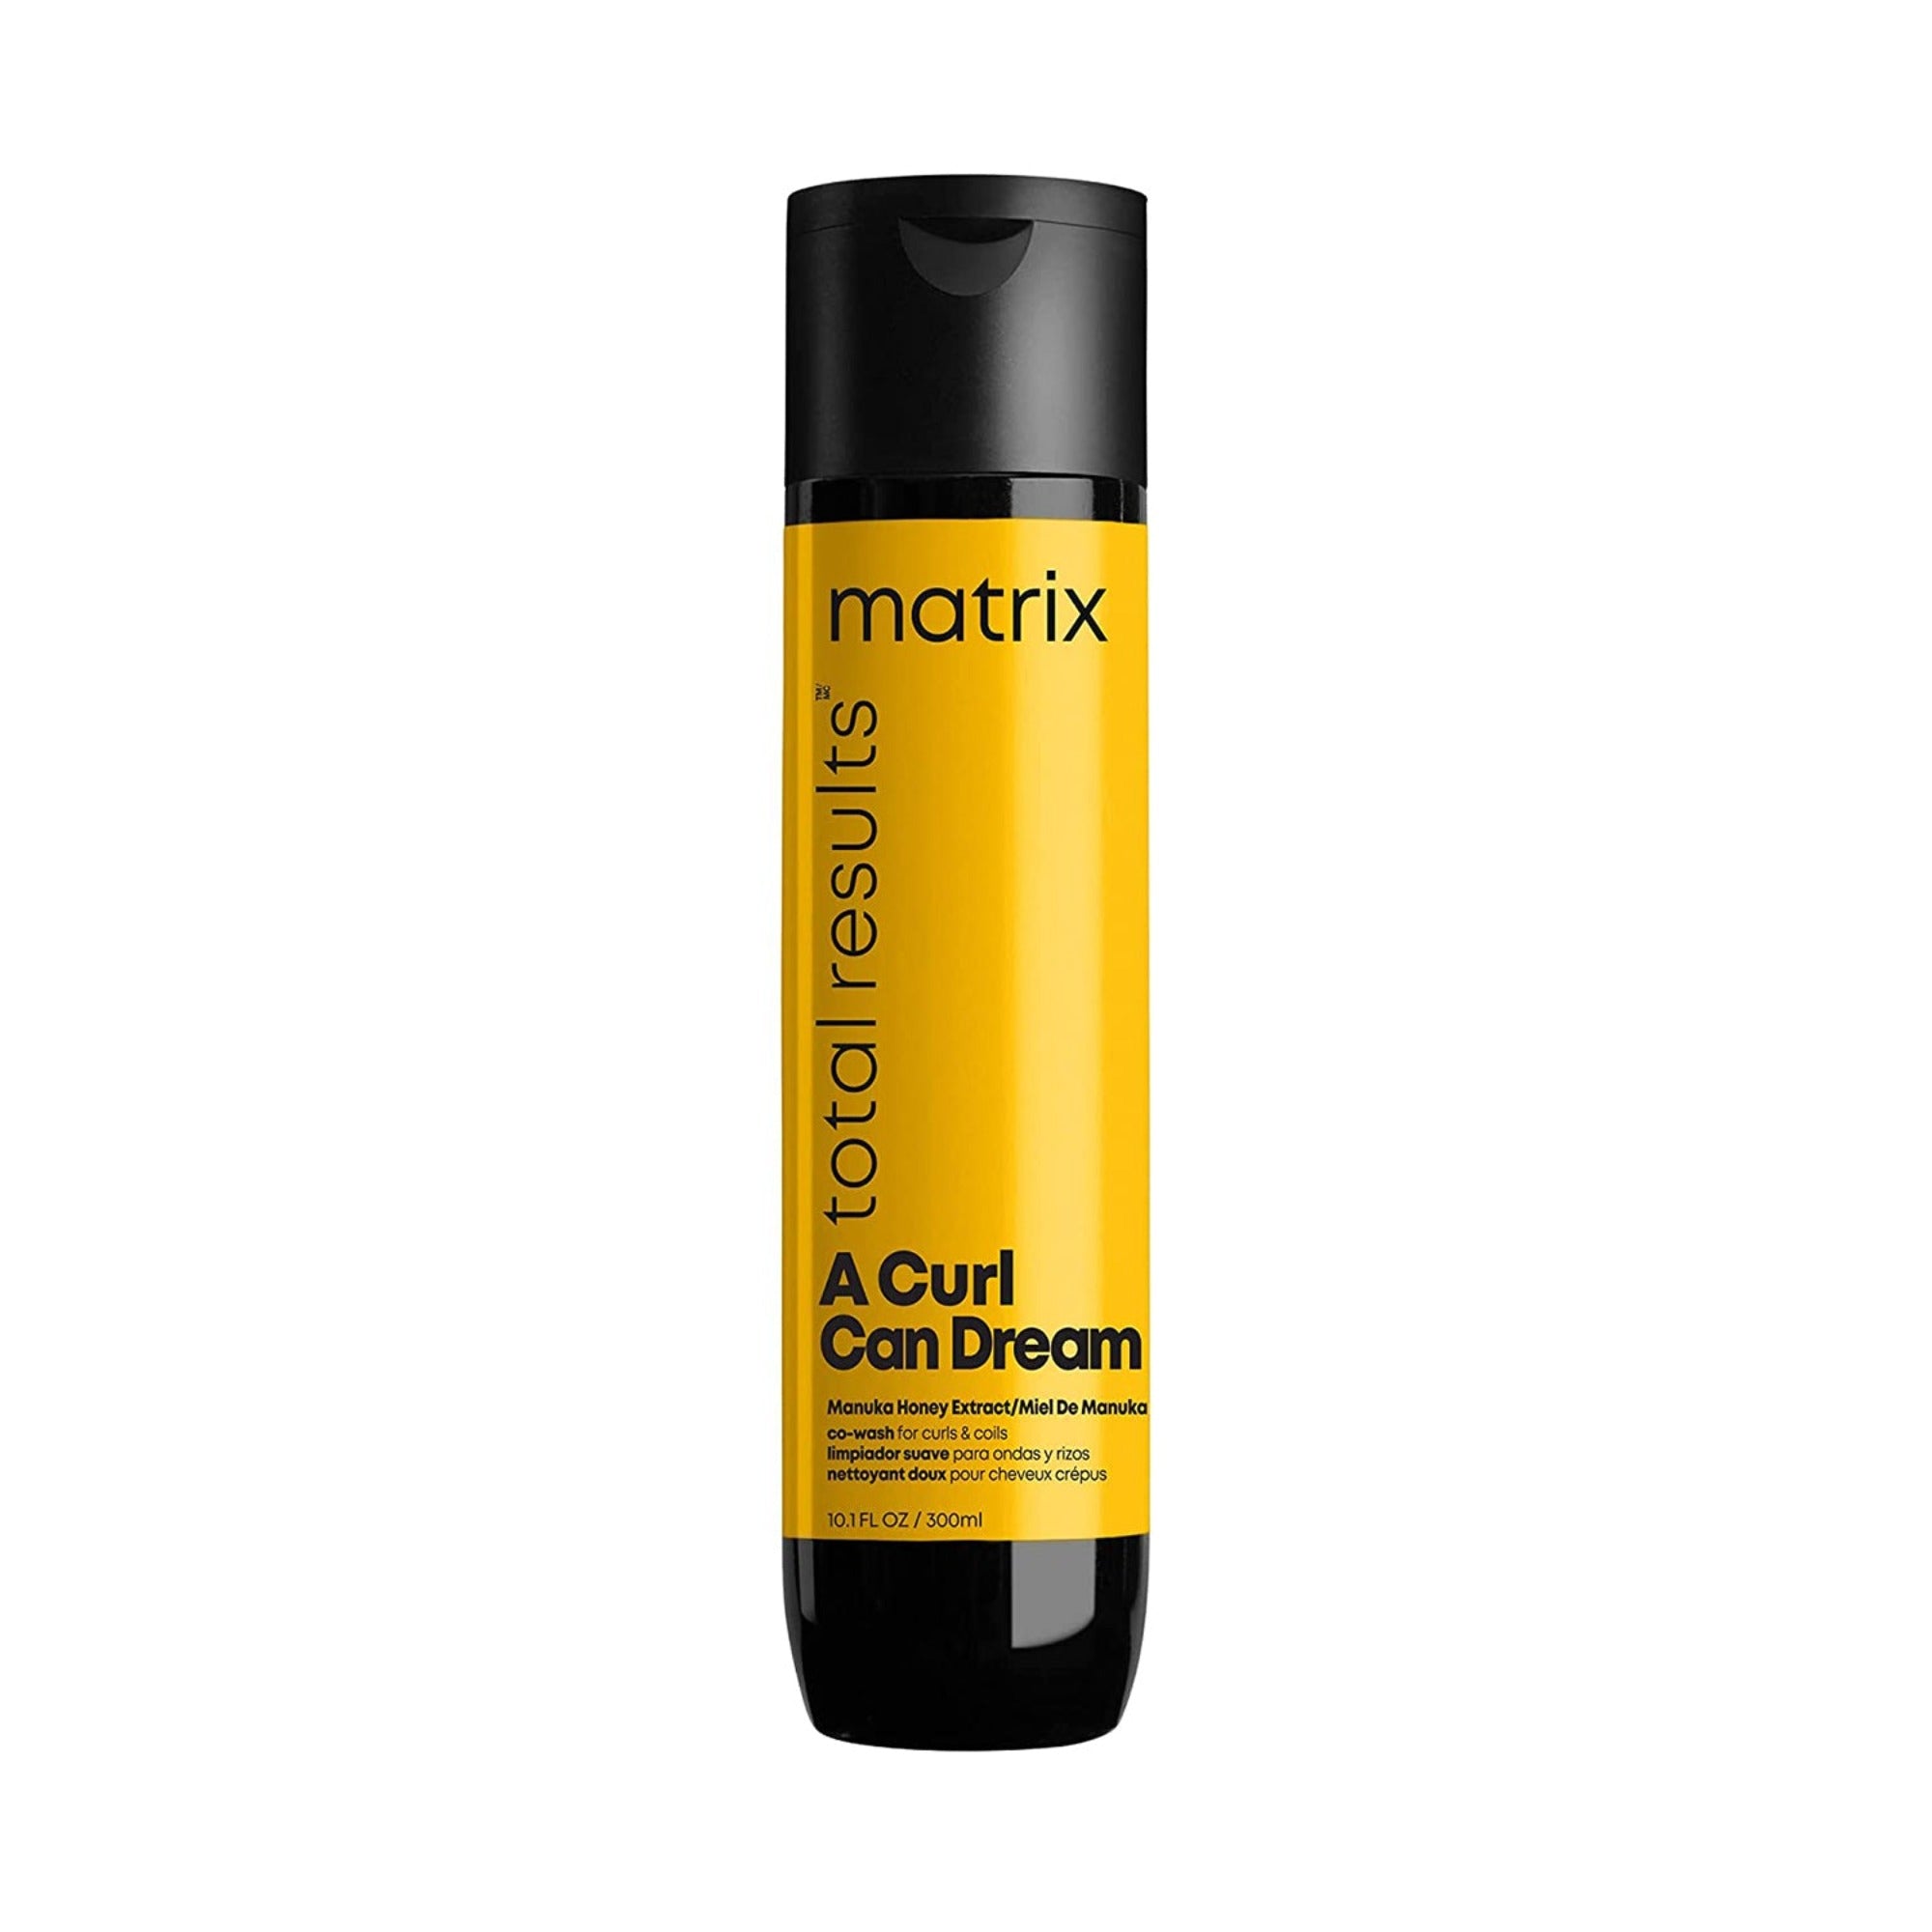 Matrix A Curl Can Dream Co-Wash / 10.1 oz